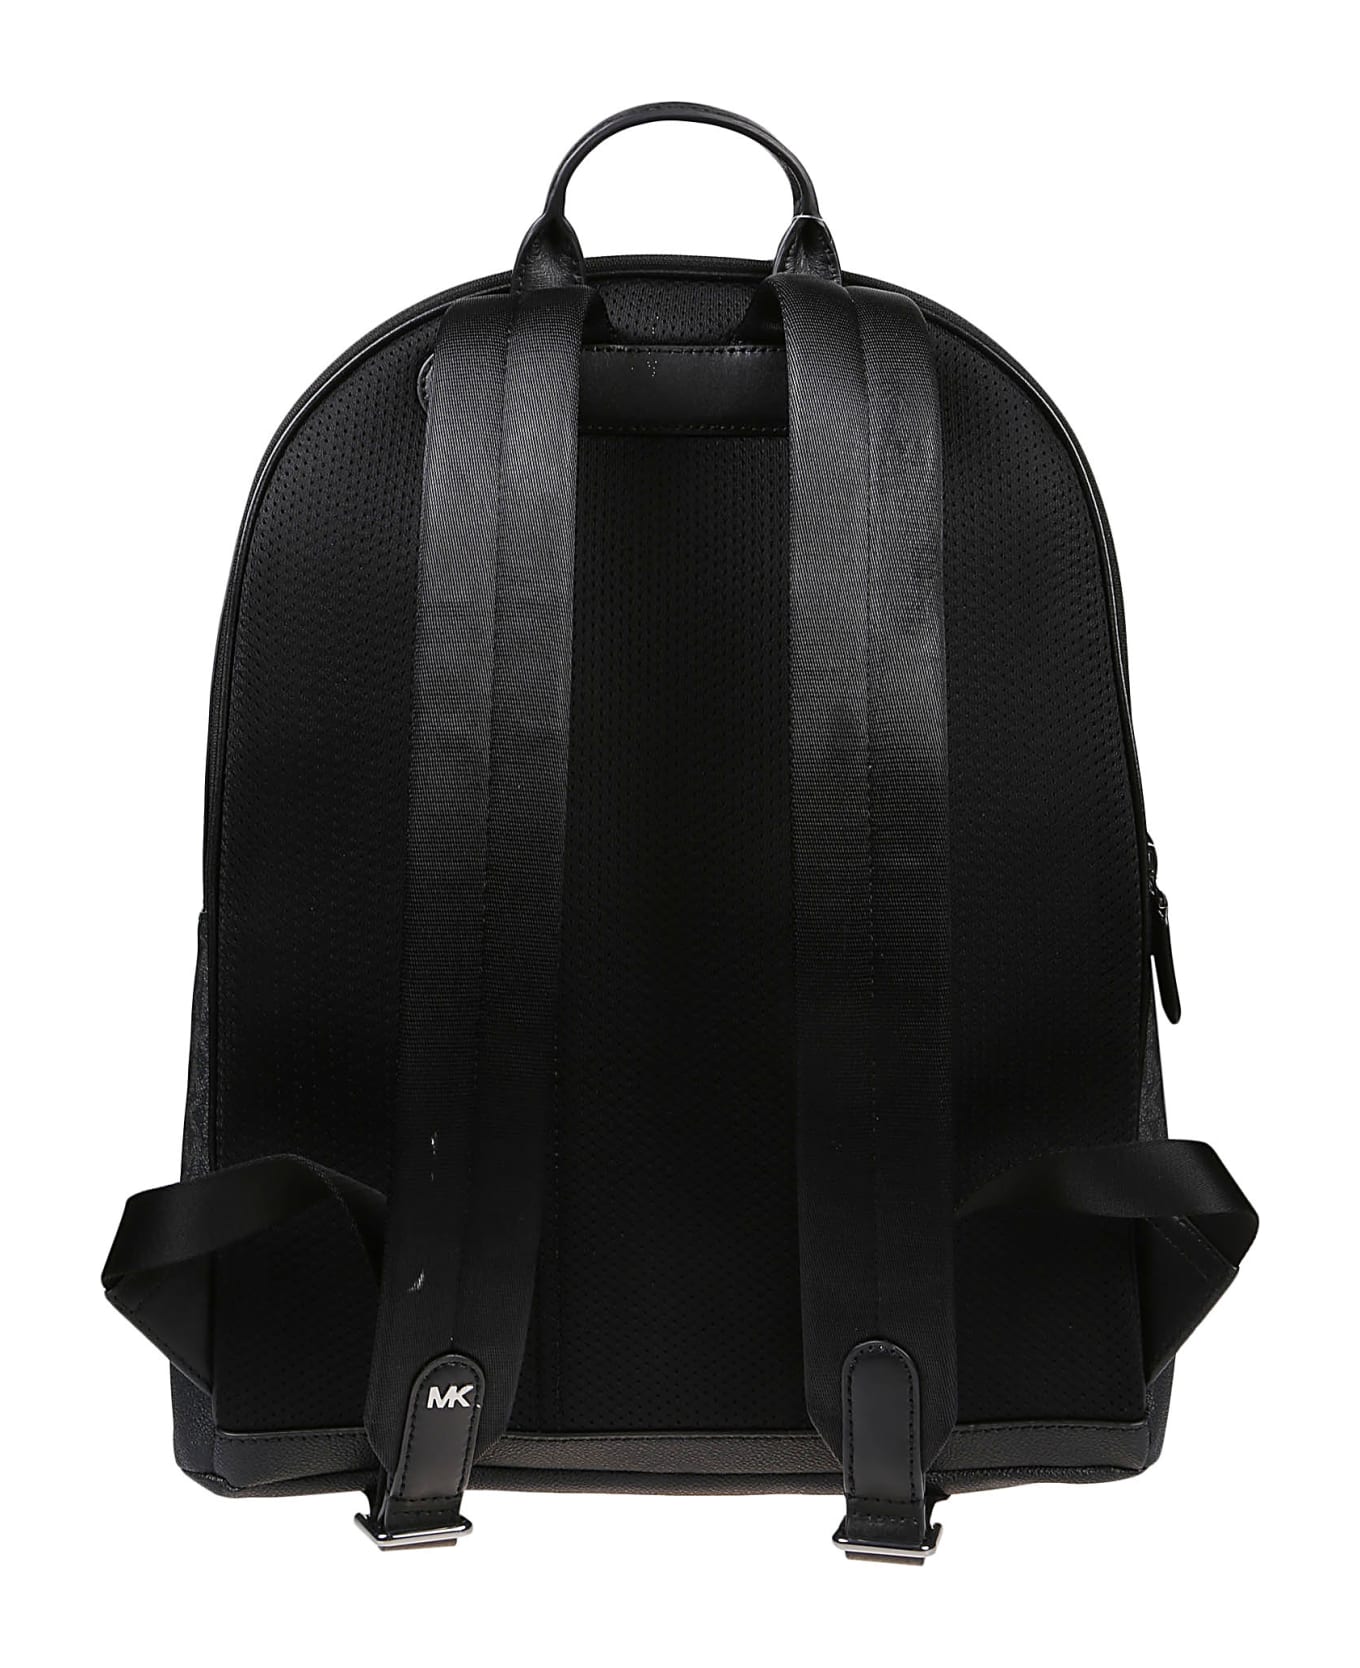 Michael Kors Hudson Commuter Backpack - Black